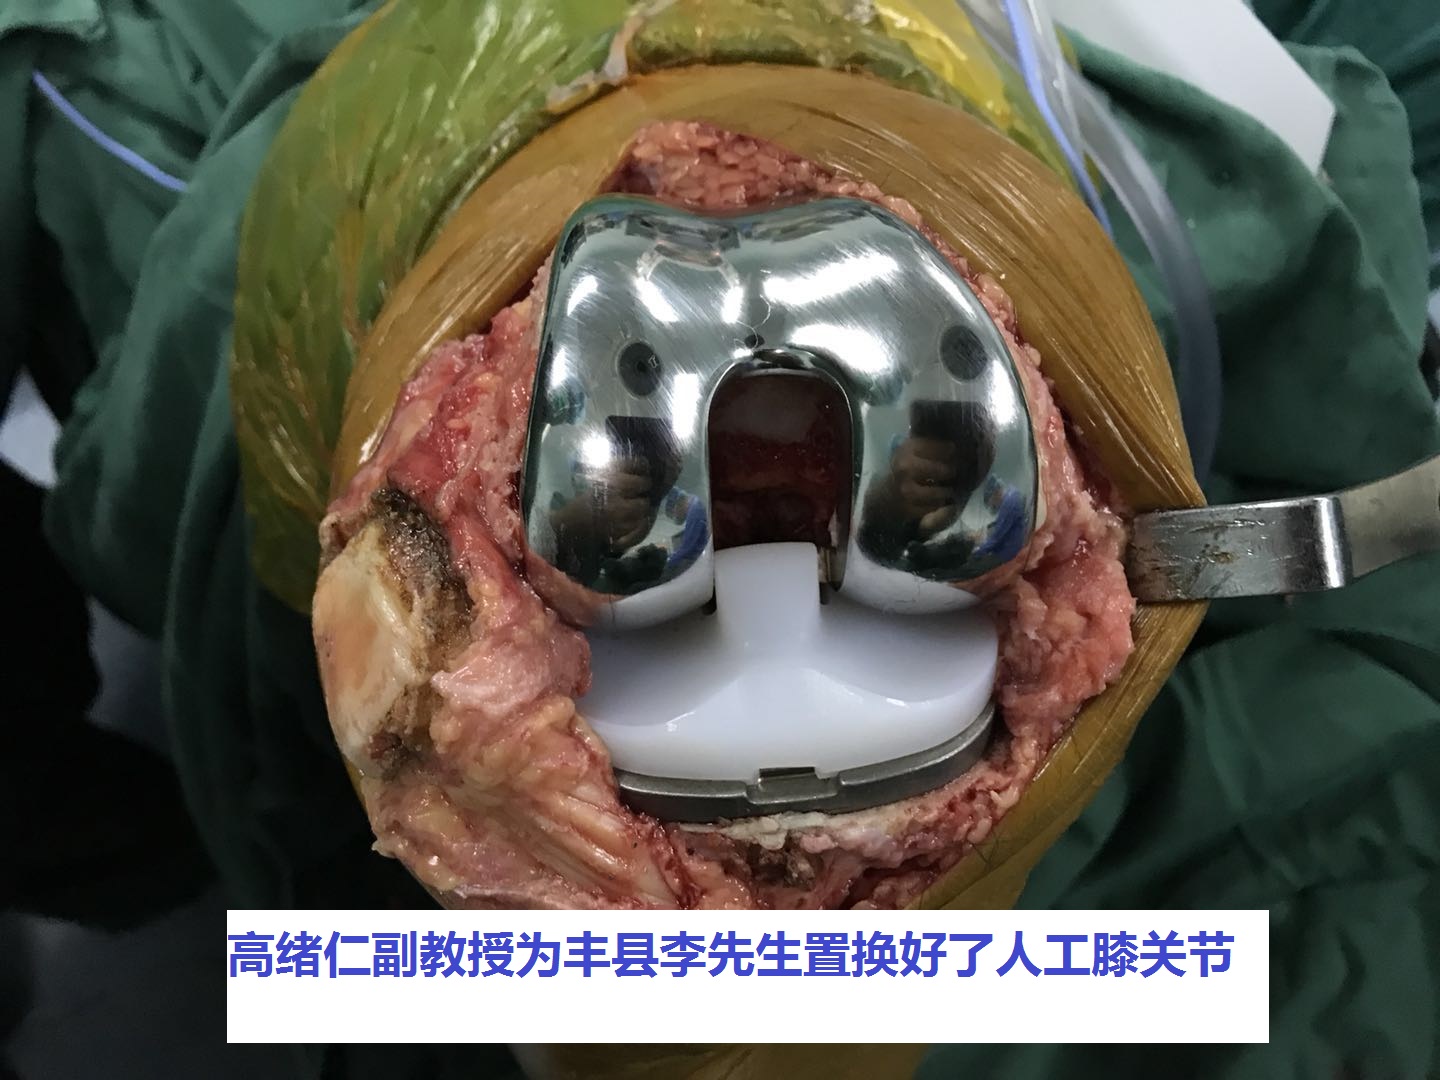 丰县宋楼70岁李先生徐州二院骨科人工膝关节置换手术过程照片